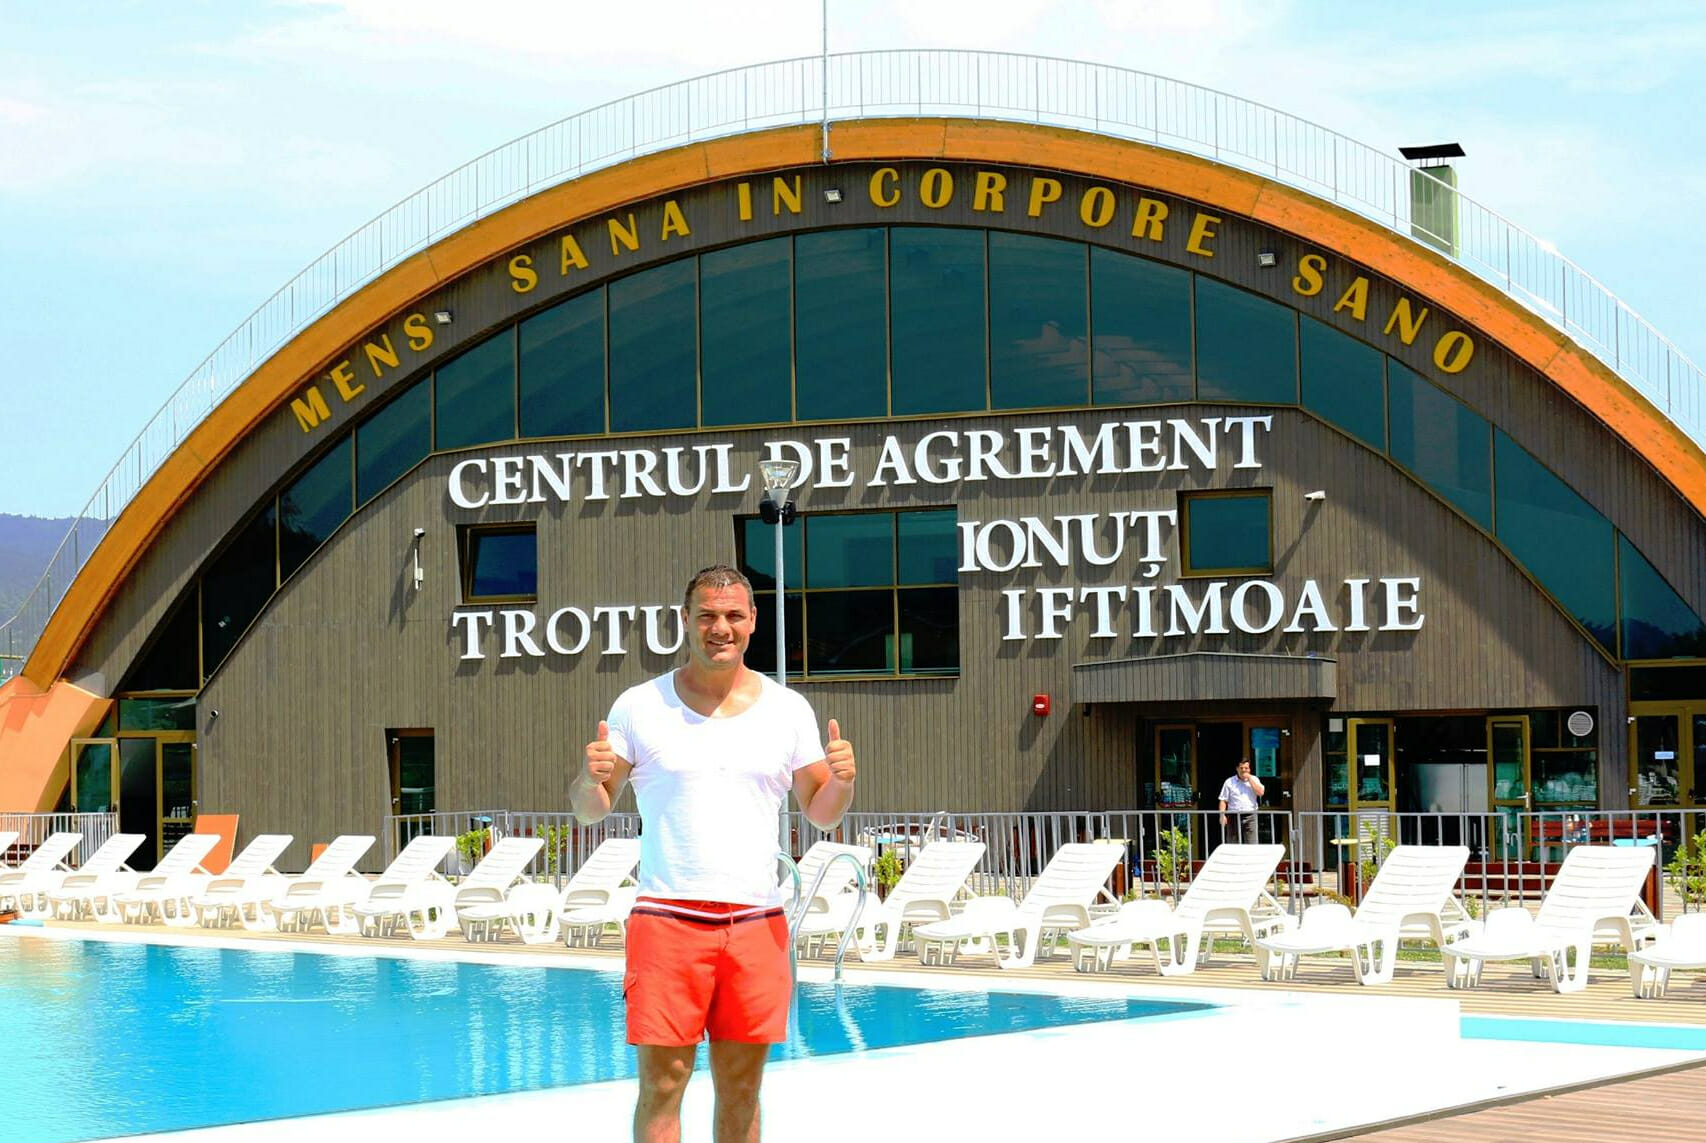 Fostul luptător Ionuț Iftimoaie și-a îndeplinit visul. Numele său pe frontispiciul unei mare baze sportive și de agrement. Conduce o investiție de 5 milioane de euro!